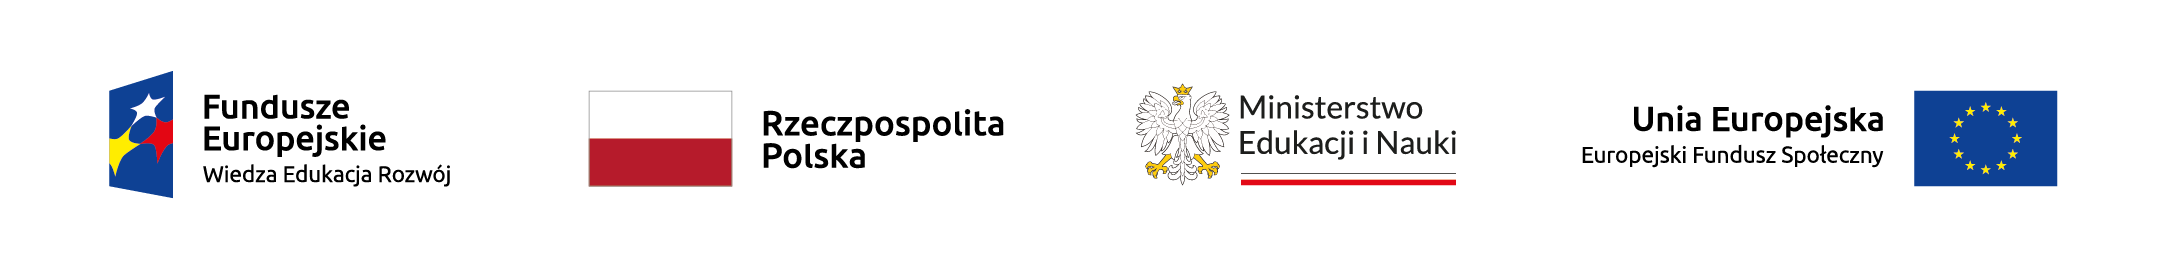 Logotypy PO WER, Rzeczpospolitej Polskiej, MEiN oraz UE.